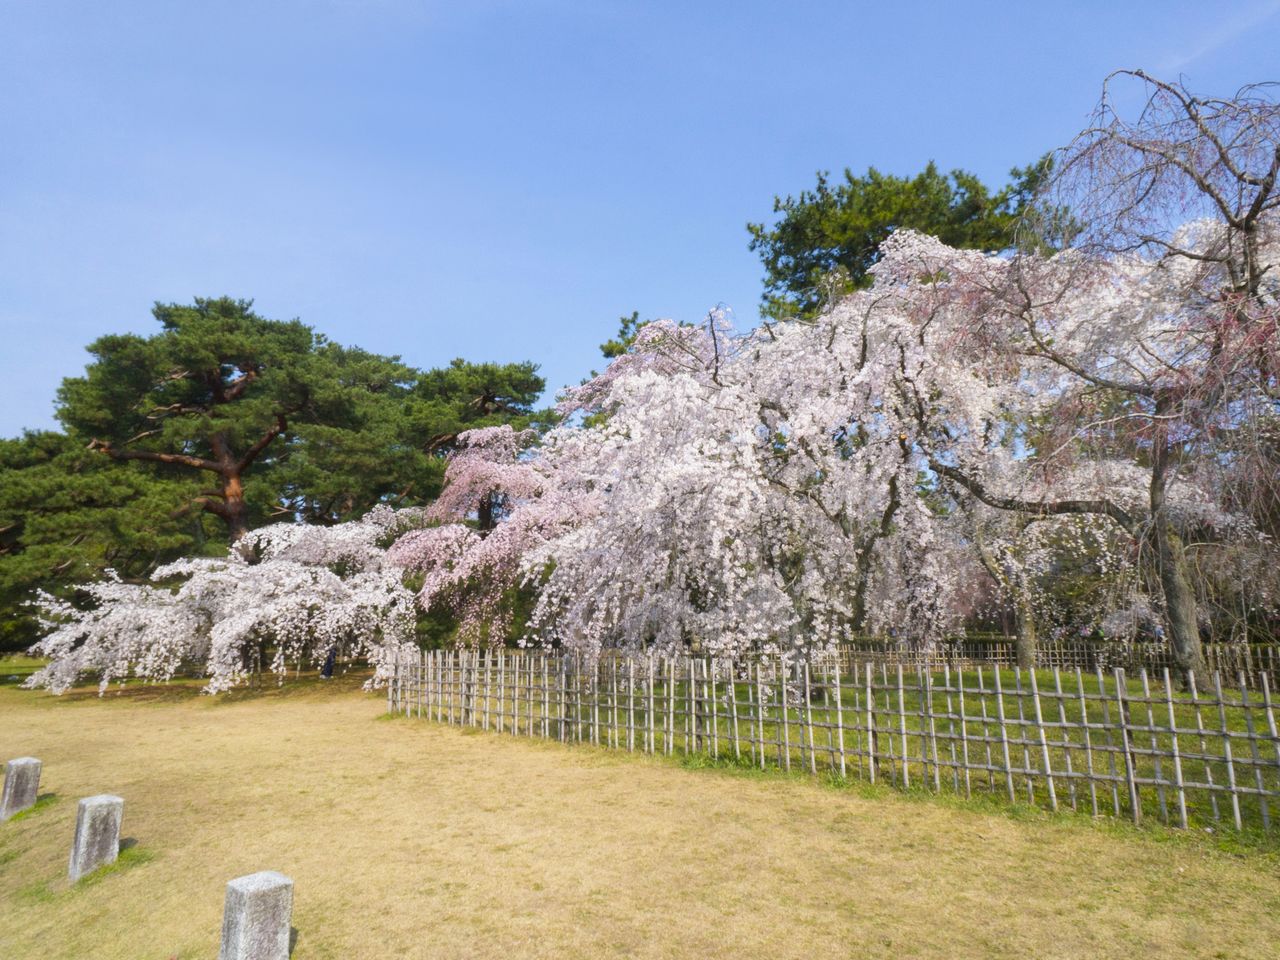 La floraison des cerisiers pleureurs annonce l’arrivée du printemps au parc Kyoto Gyoen.